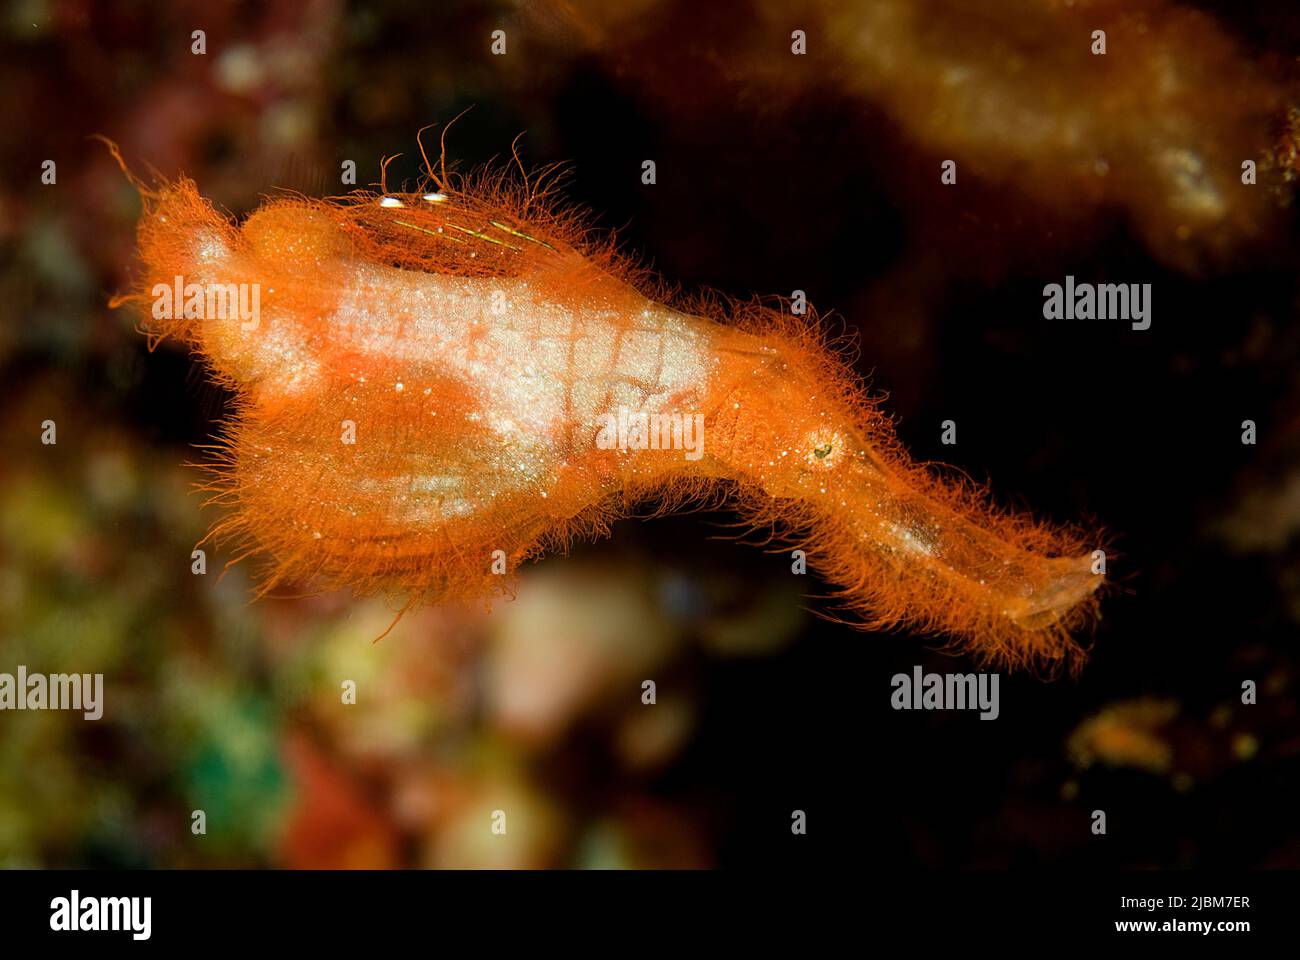 Rough snout ghost pipefish (Solenostomus paegnius), family Solenostomidae, Milne Bay, Alotau, Papua New Guinea, Oceania, Pacific ocean Stock Photo